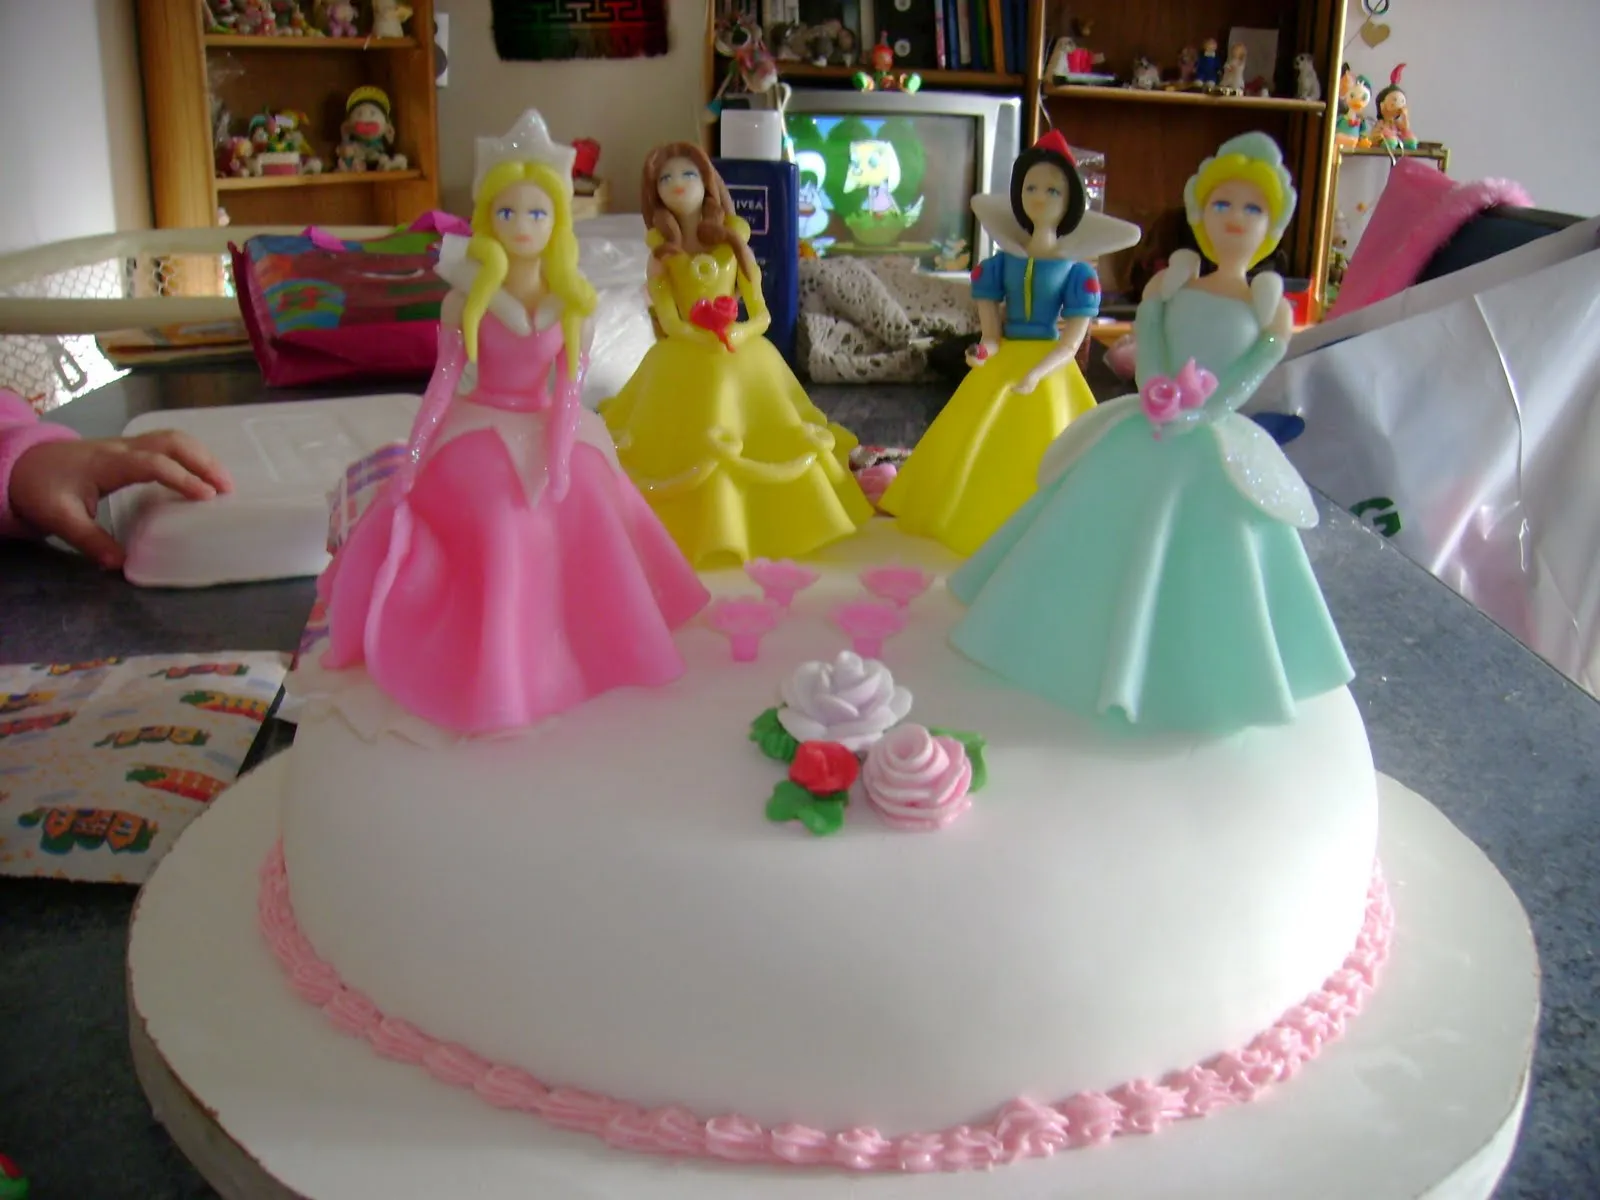 Tortas decoradas con princesas - Imagui